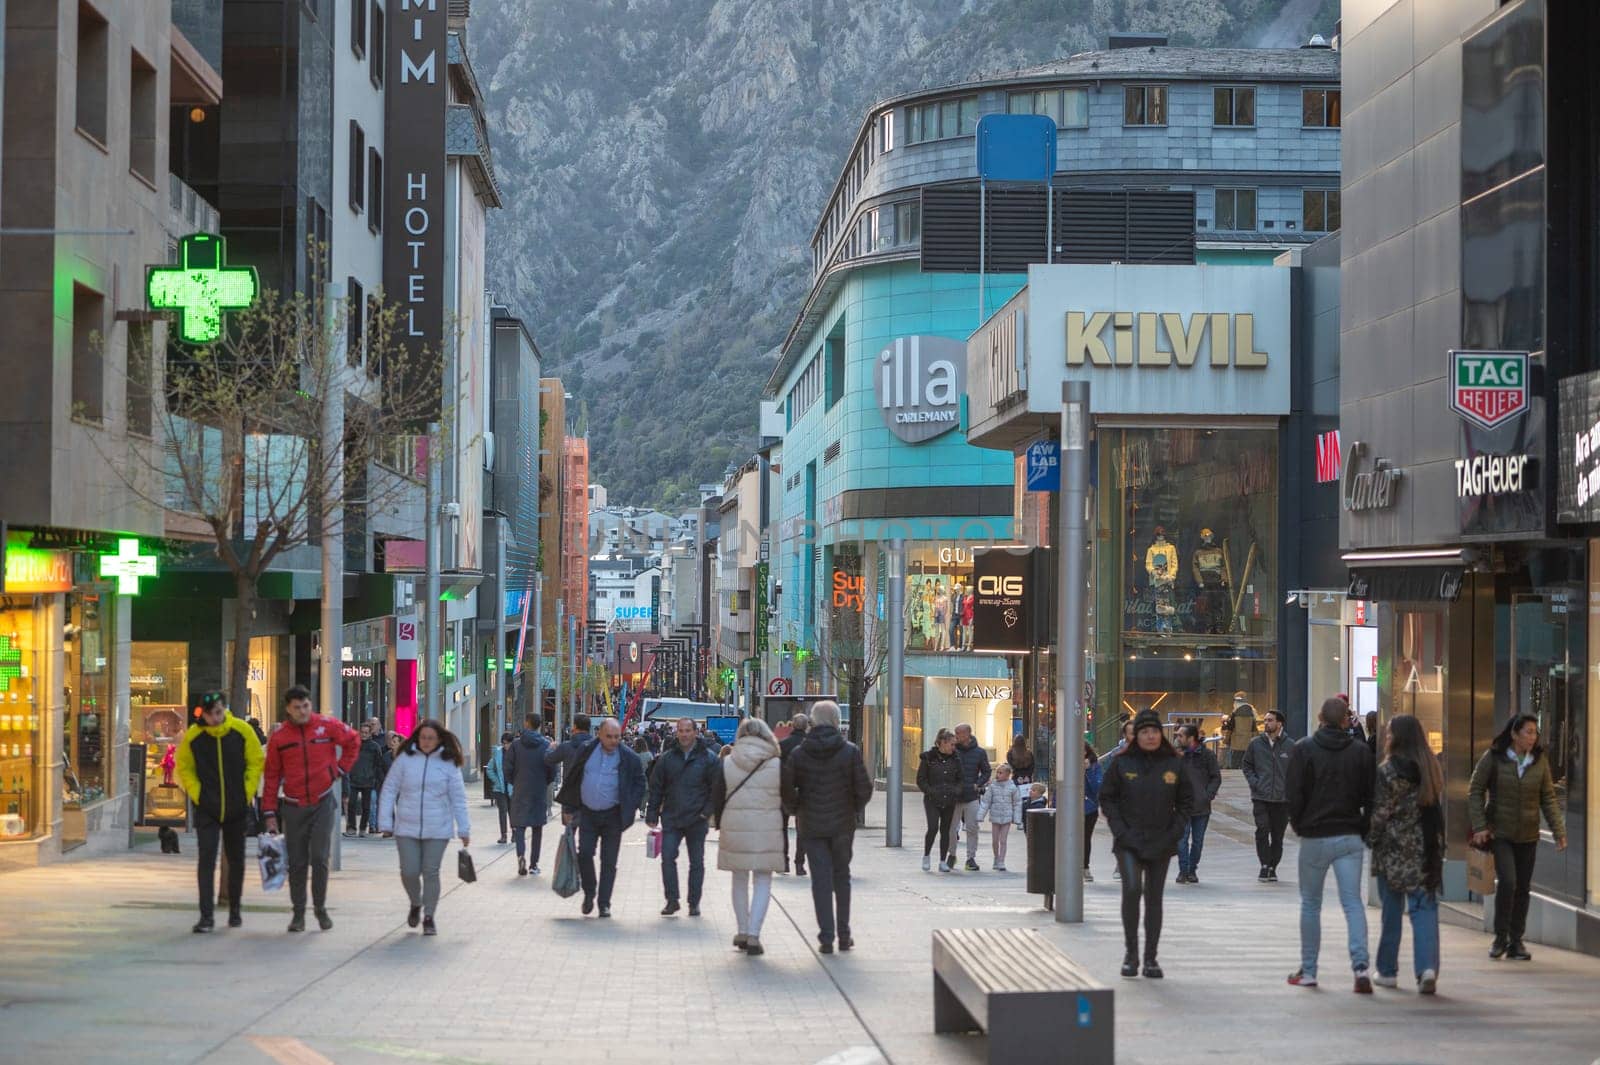 Andorra La Vella, Andorra : 2023 Aprill 15 : People Walk in the Comercial Street named Meritxell. Andorra la Vella, Andorra in winter.